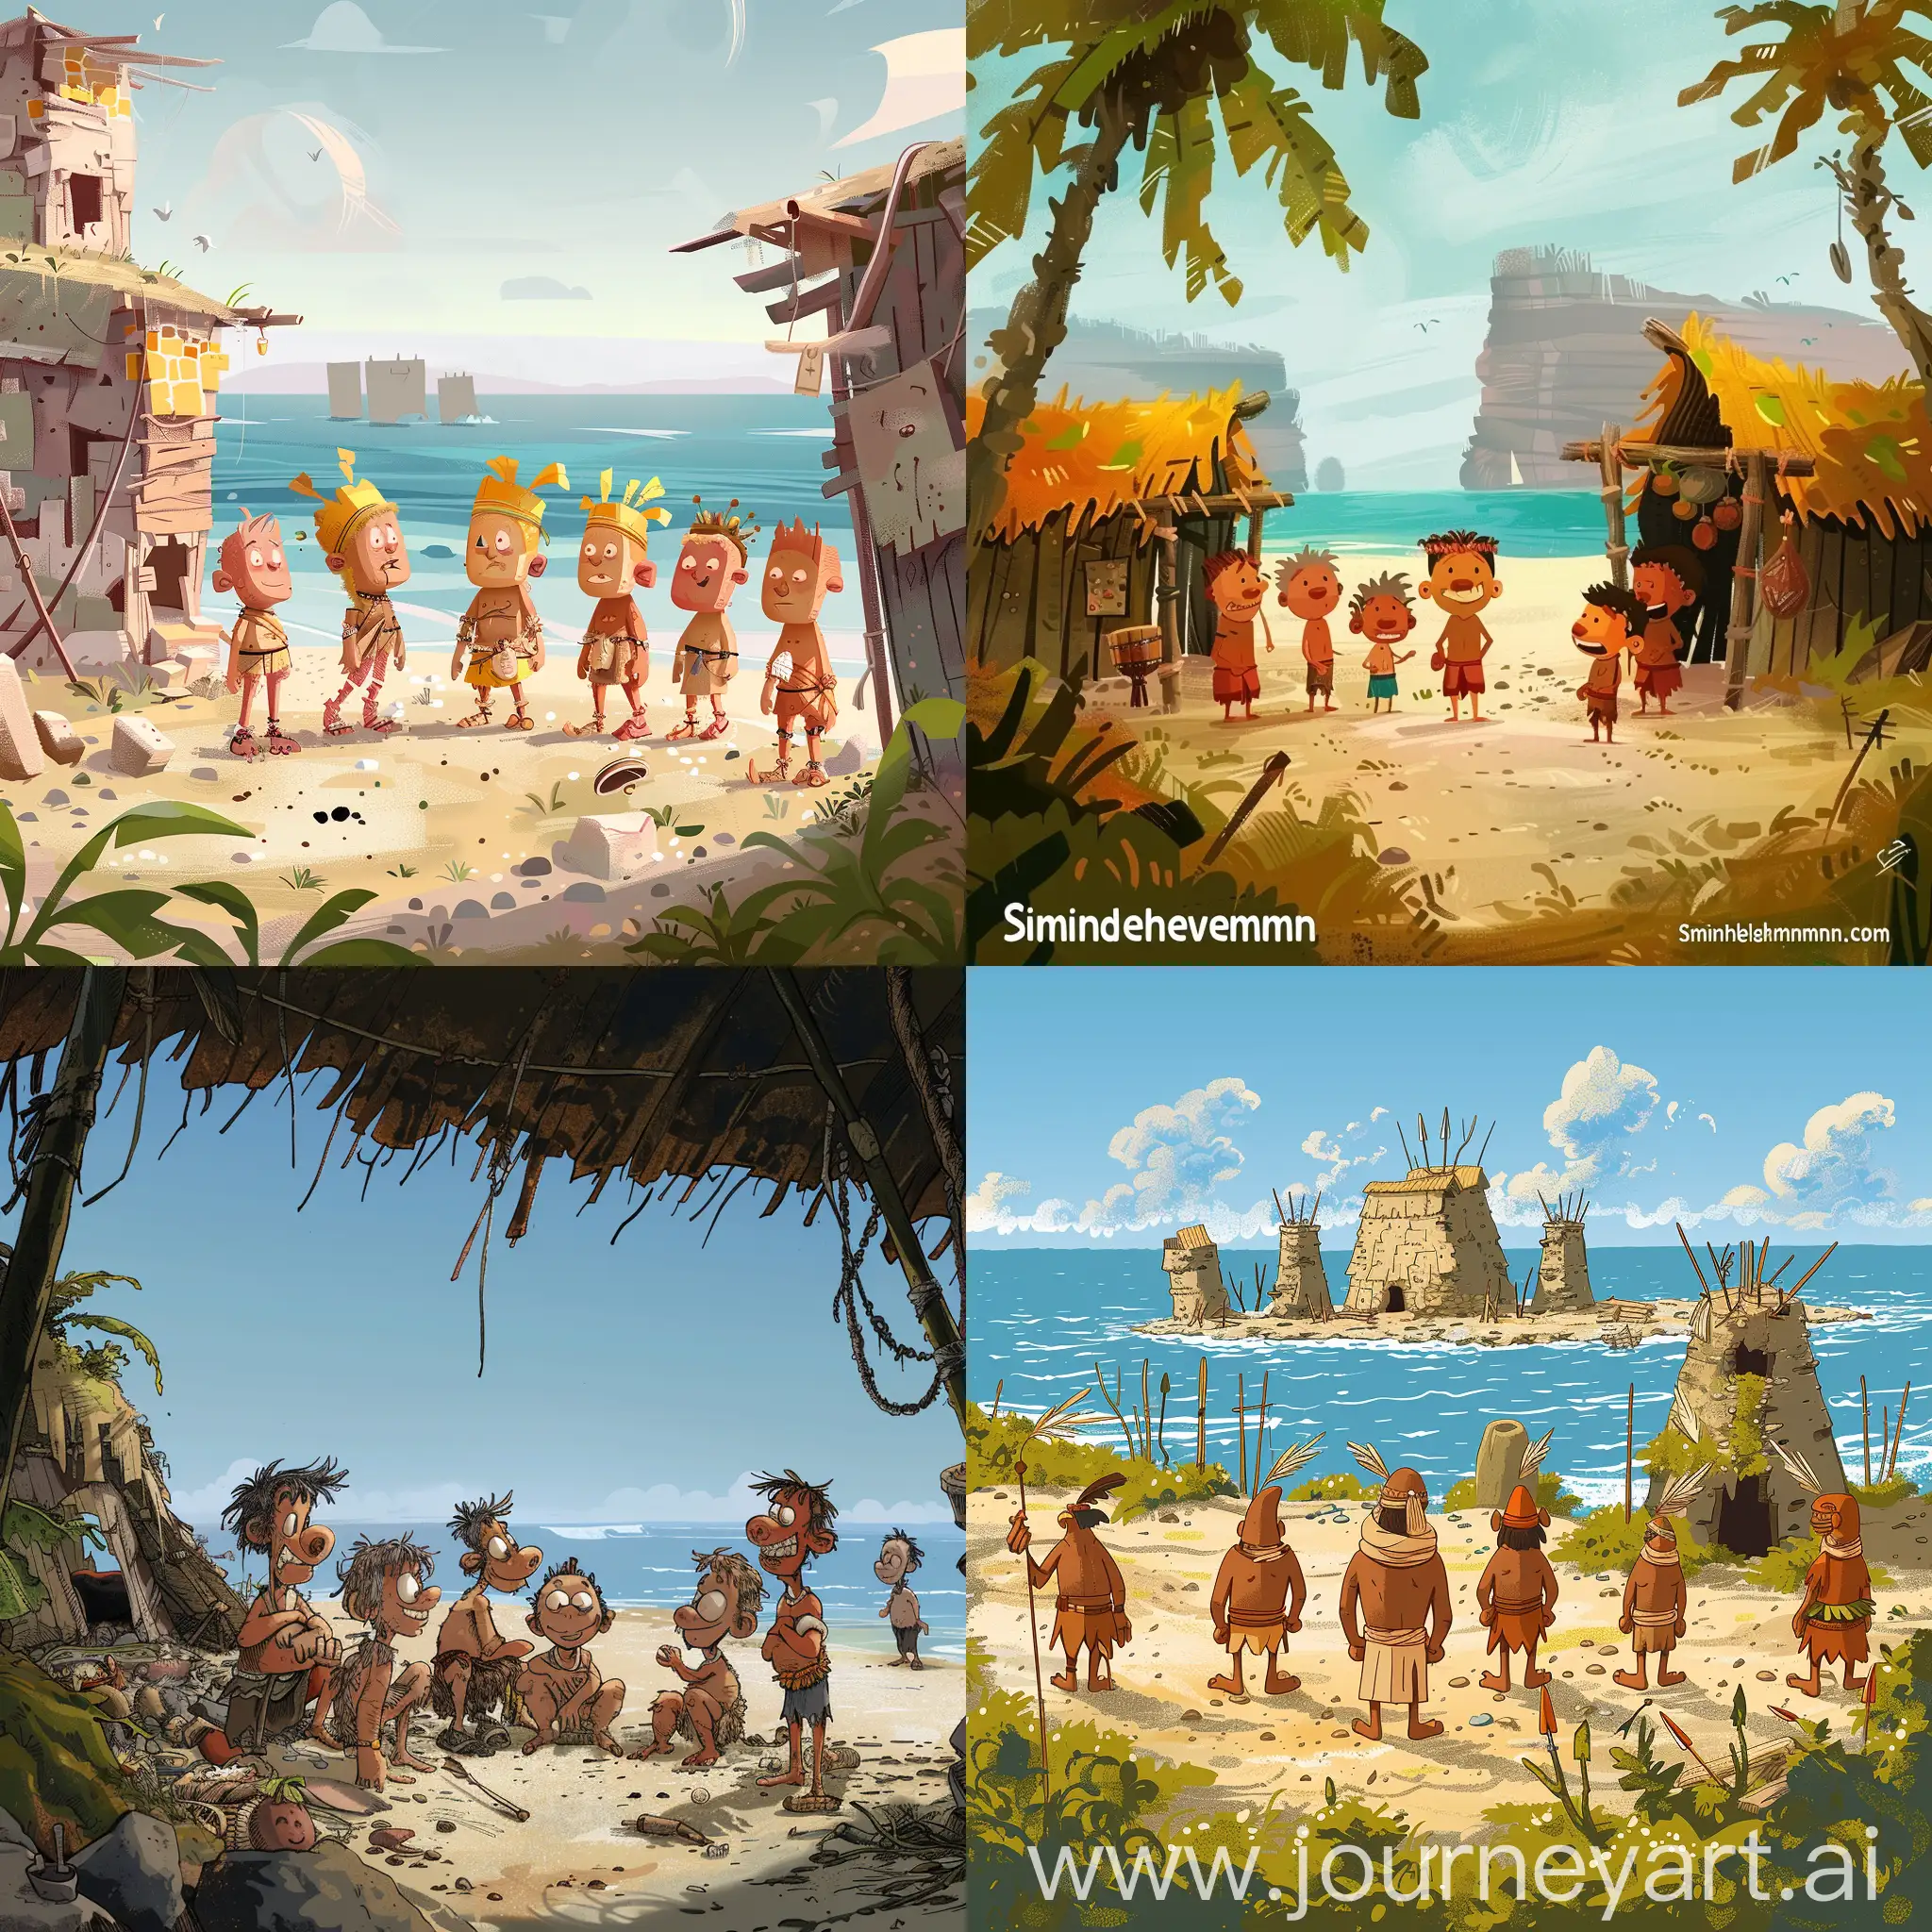 原始部落 ，破败，海边 ，卡通插画，6个人物远景，Simon hintermann